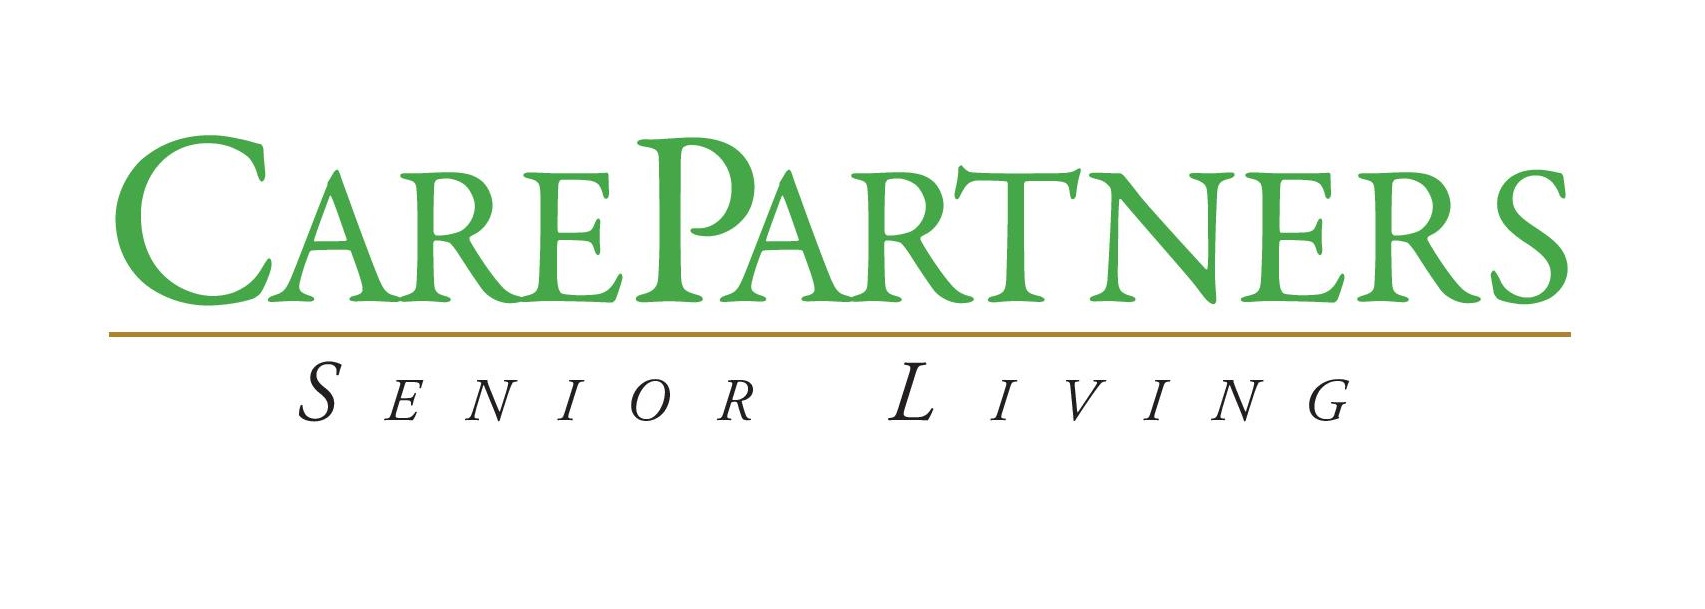 I. Care Partners Senior Living (Tier 2)